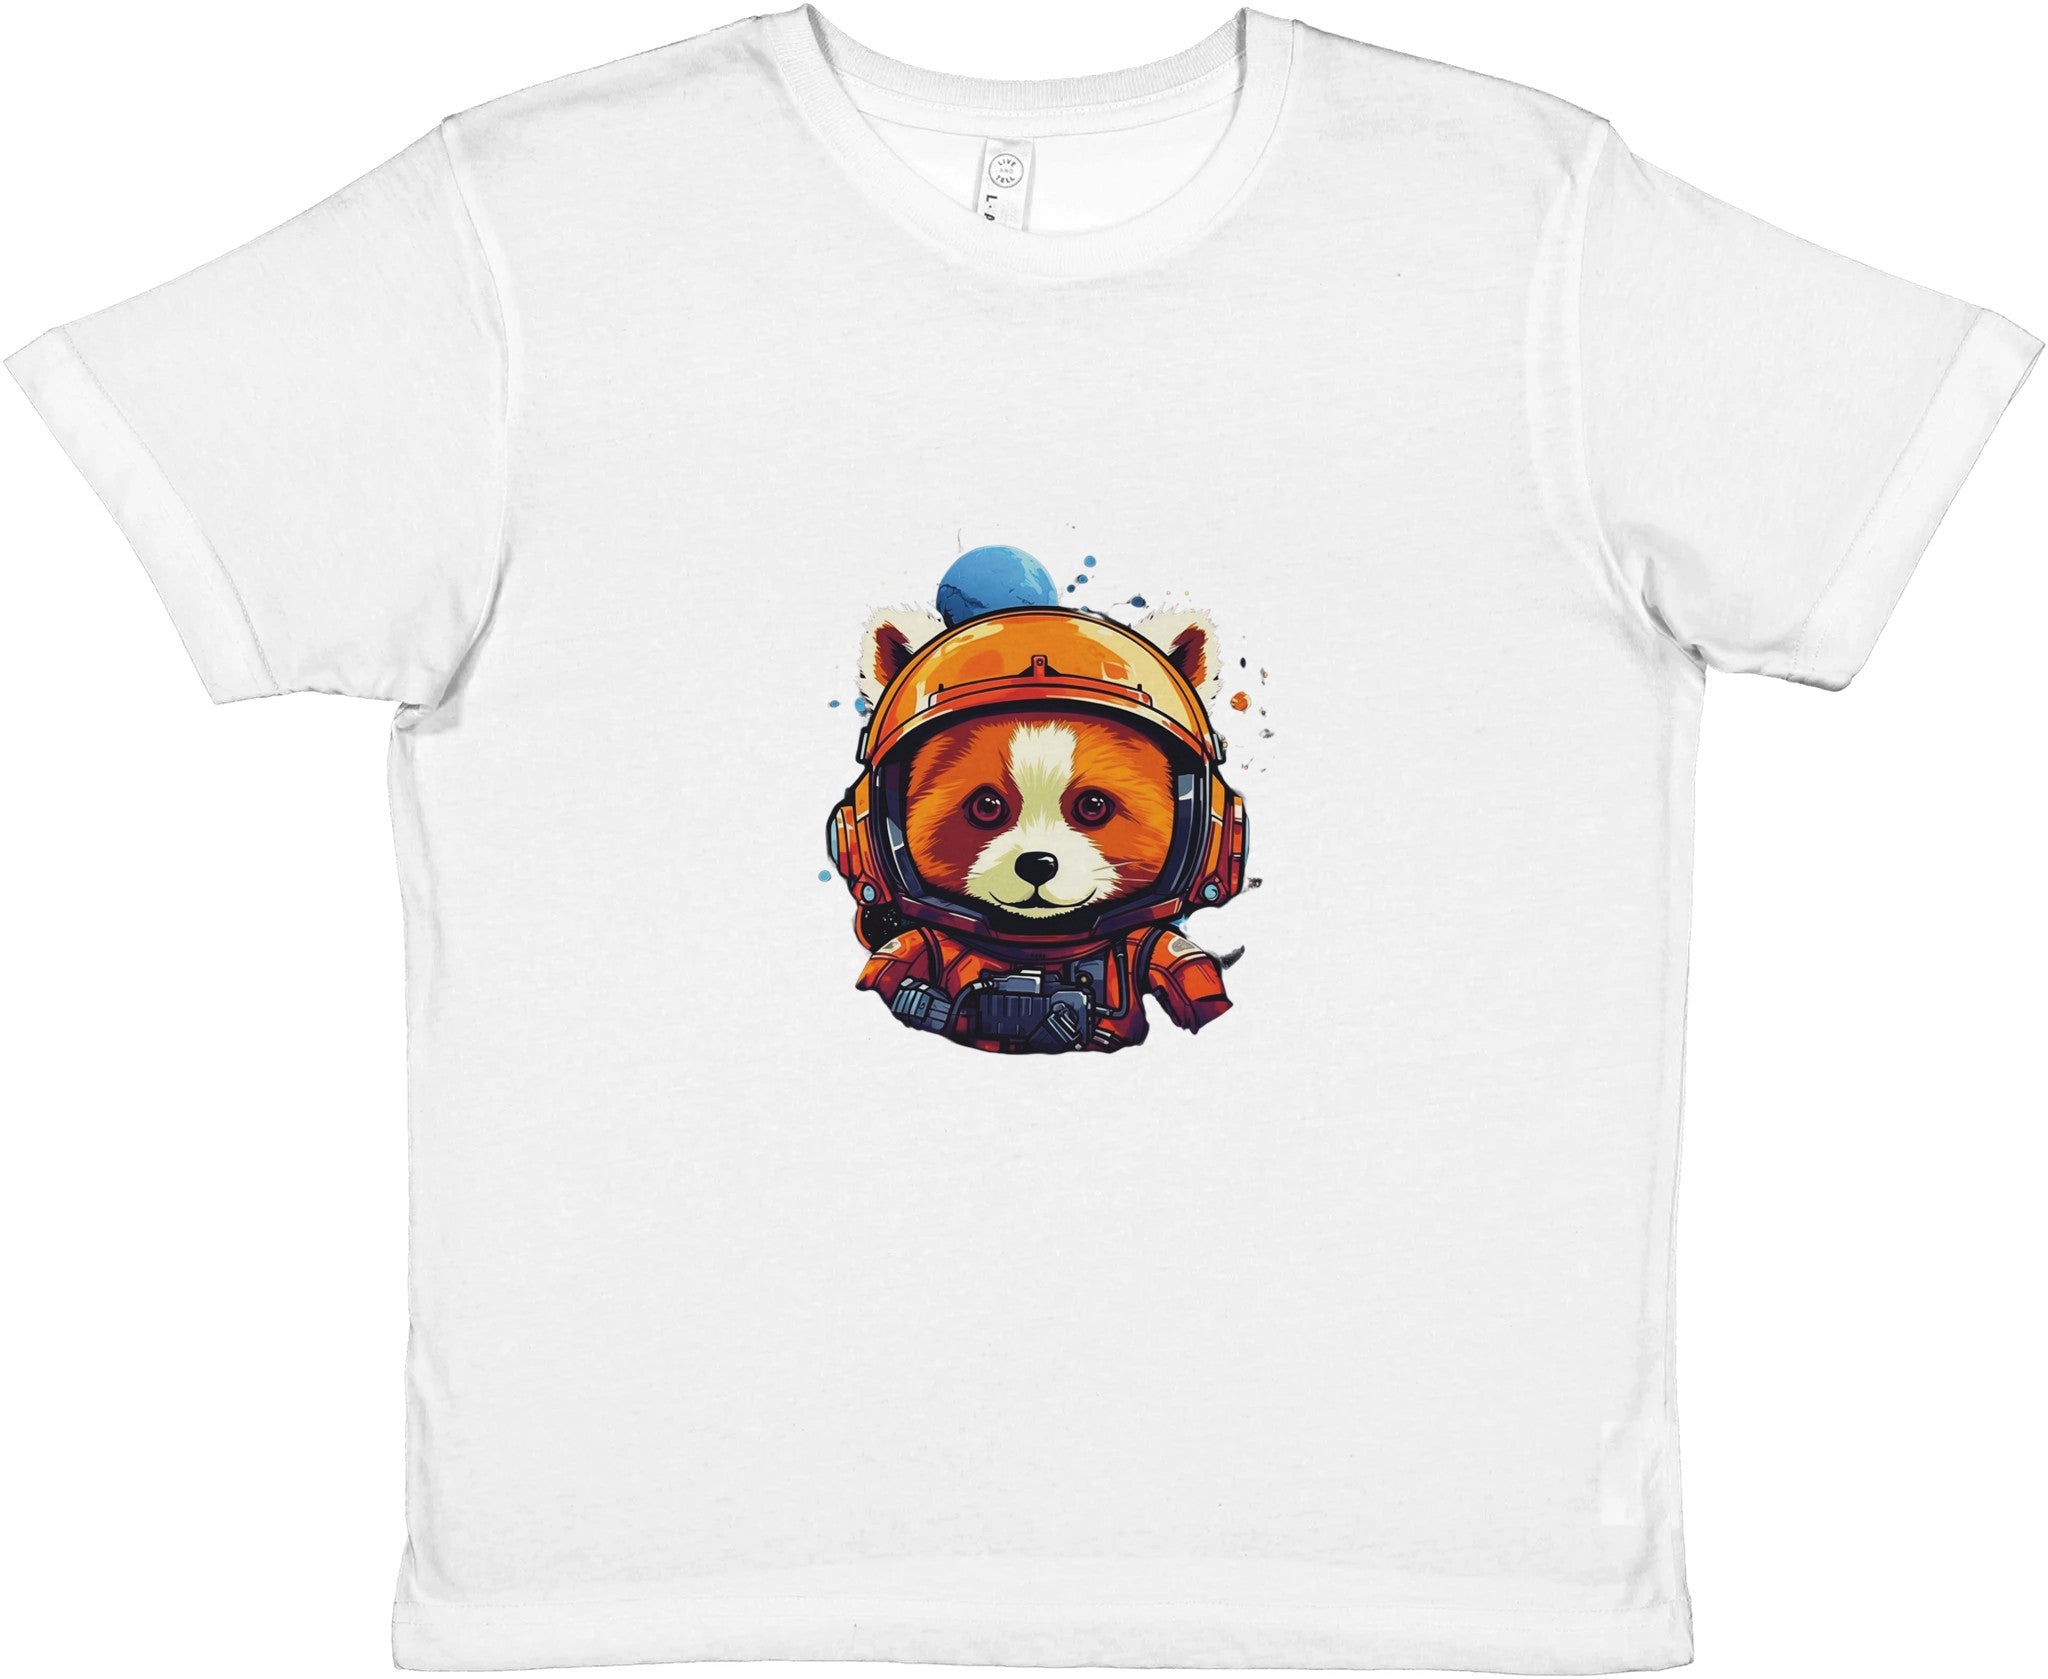 Cosmic Red Panda Astronaut Kids Crewneck T-shirt - Optimalprint